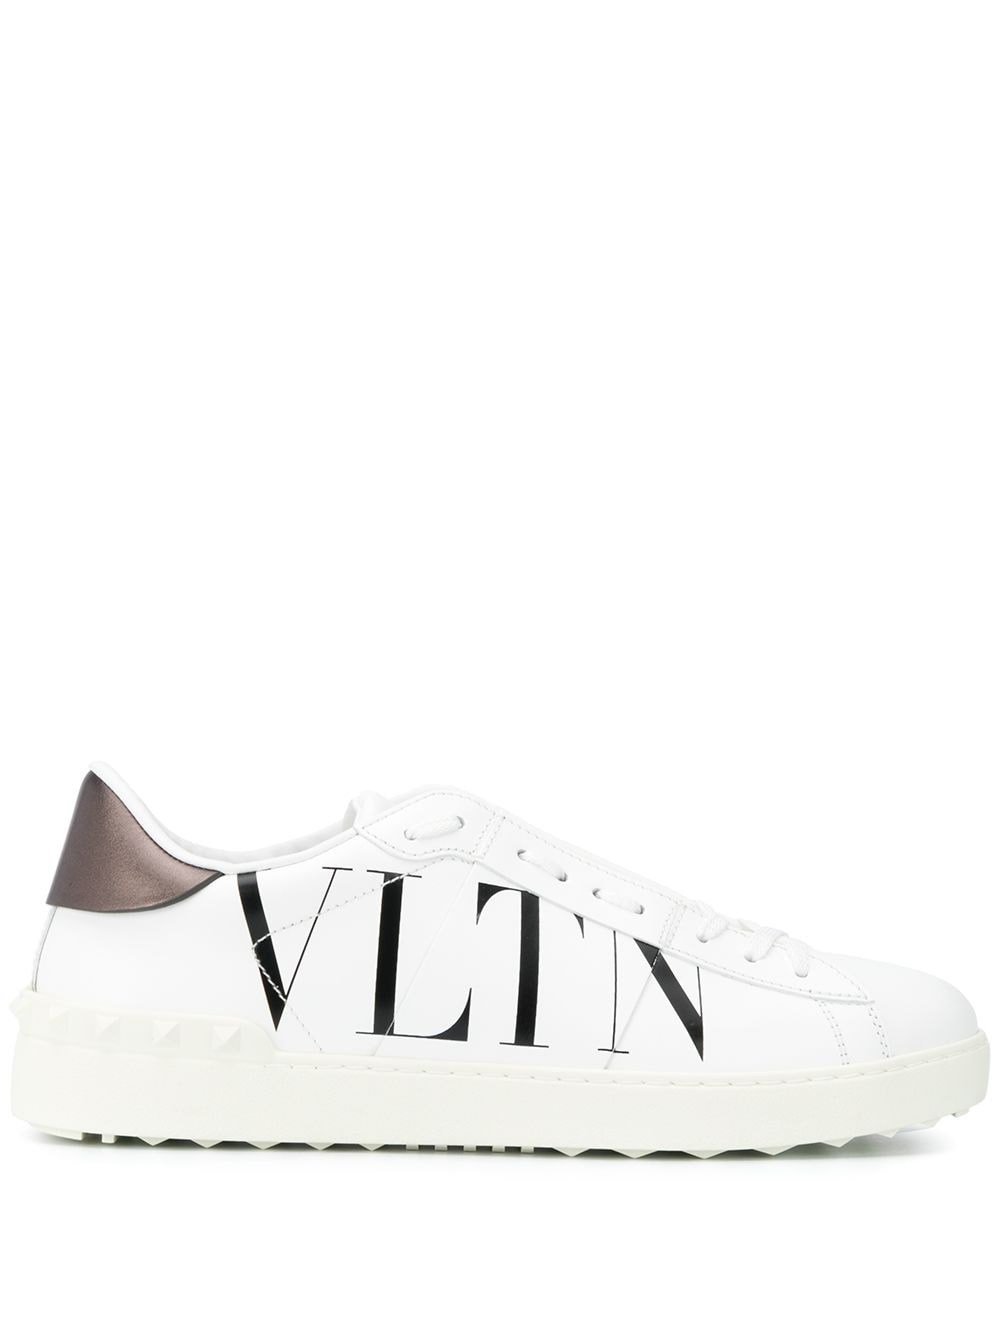 Valentino Garavani 'vltn' Sneakers In Bianco